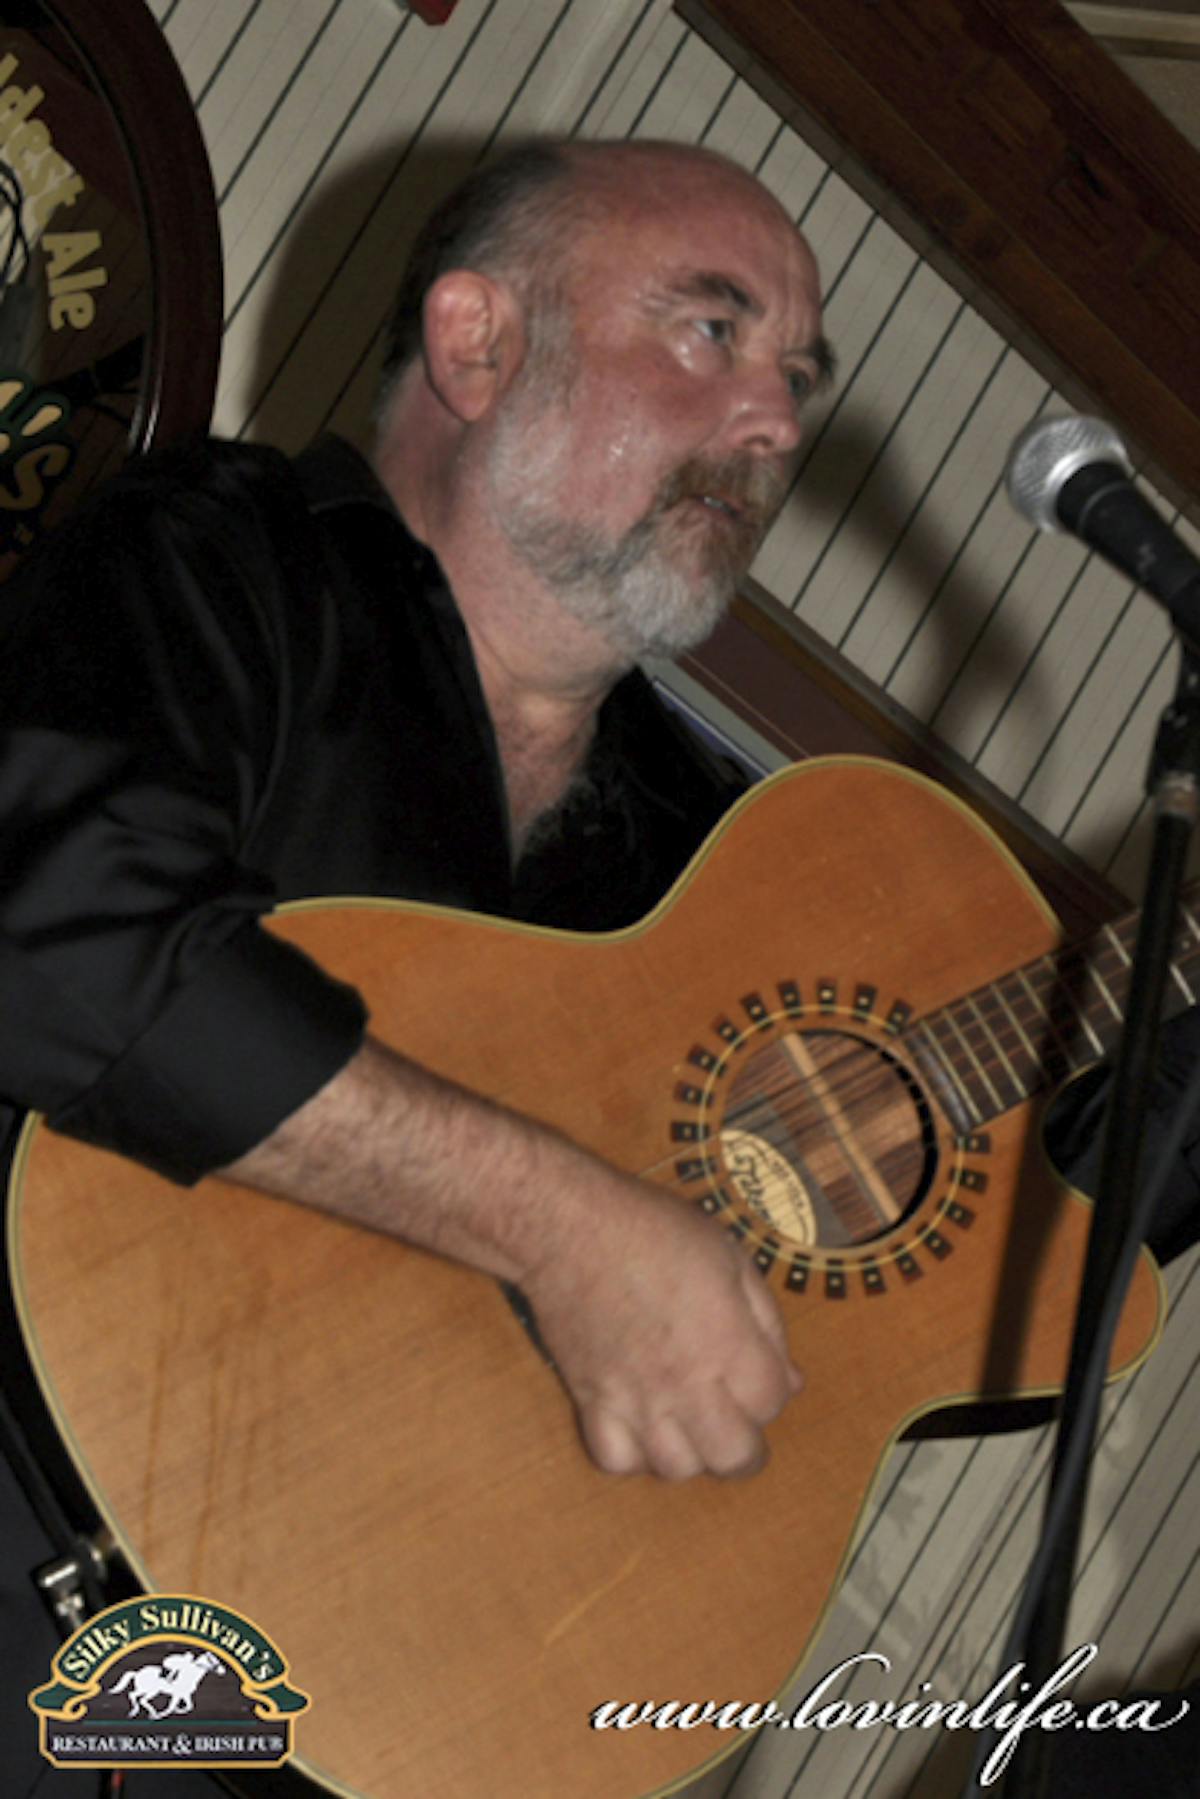 a man holding a guitar